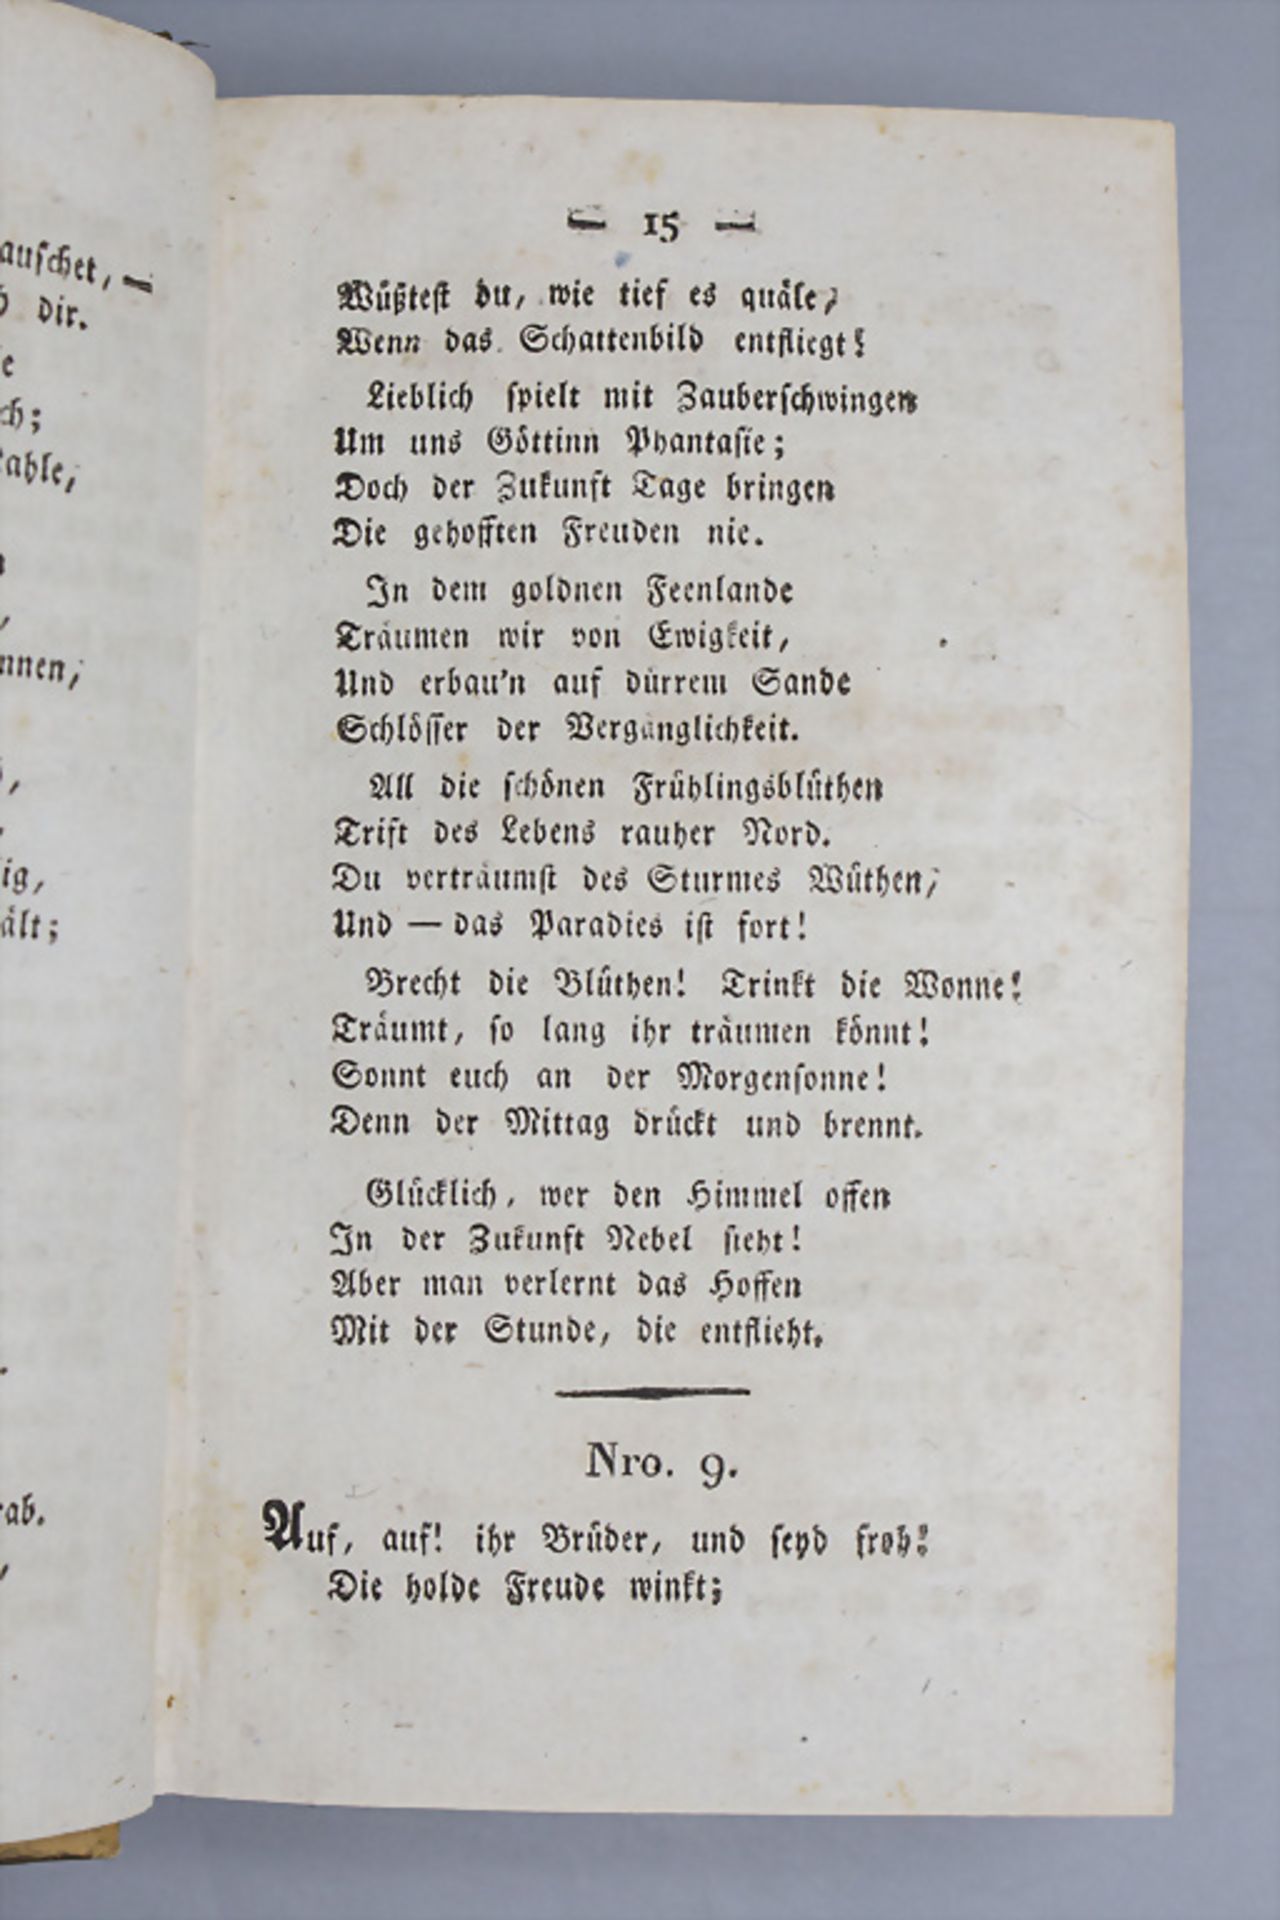 Auswahl der beliebtesten Arien und Gesänge zur Erhöhung des gesellschaftlichen Vergnügens, 1819 - Bild 6 aus 6